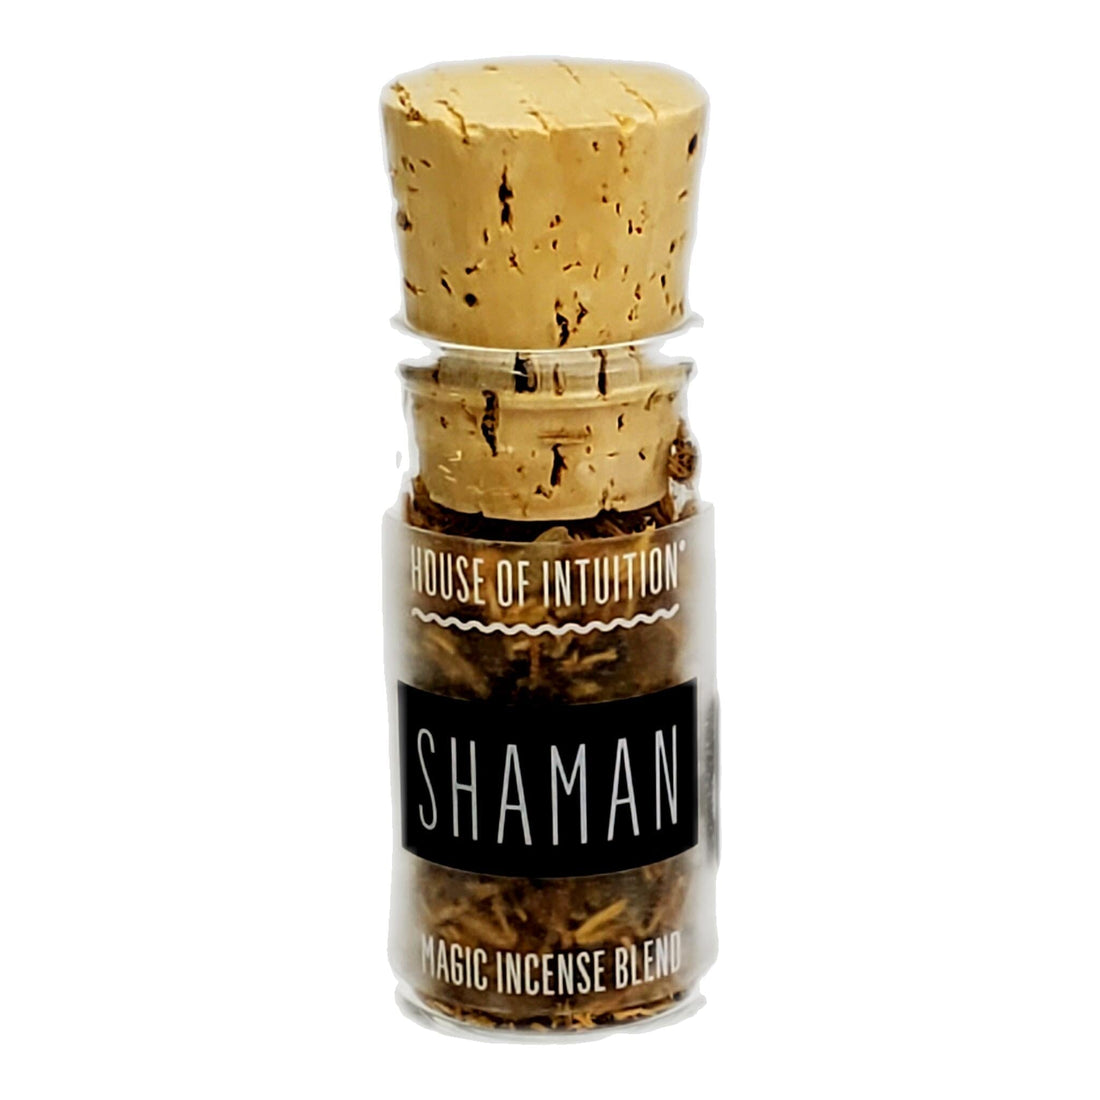 Shaman Incense Blend "Glass Jar" Incense & Holders -Incense V50 